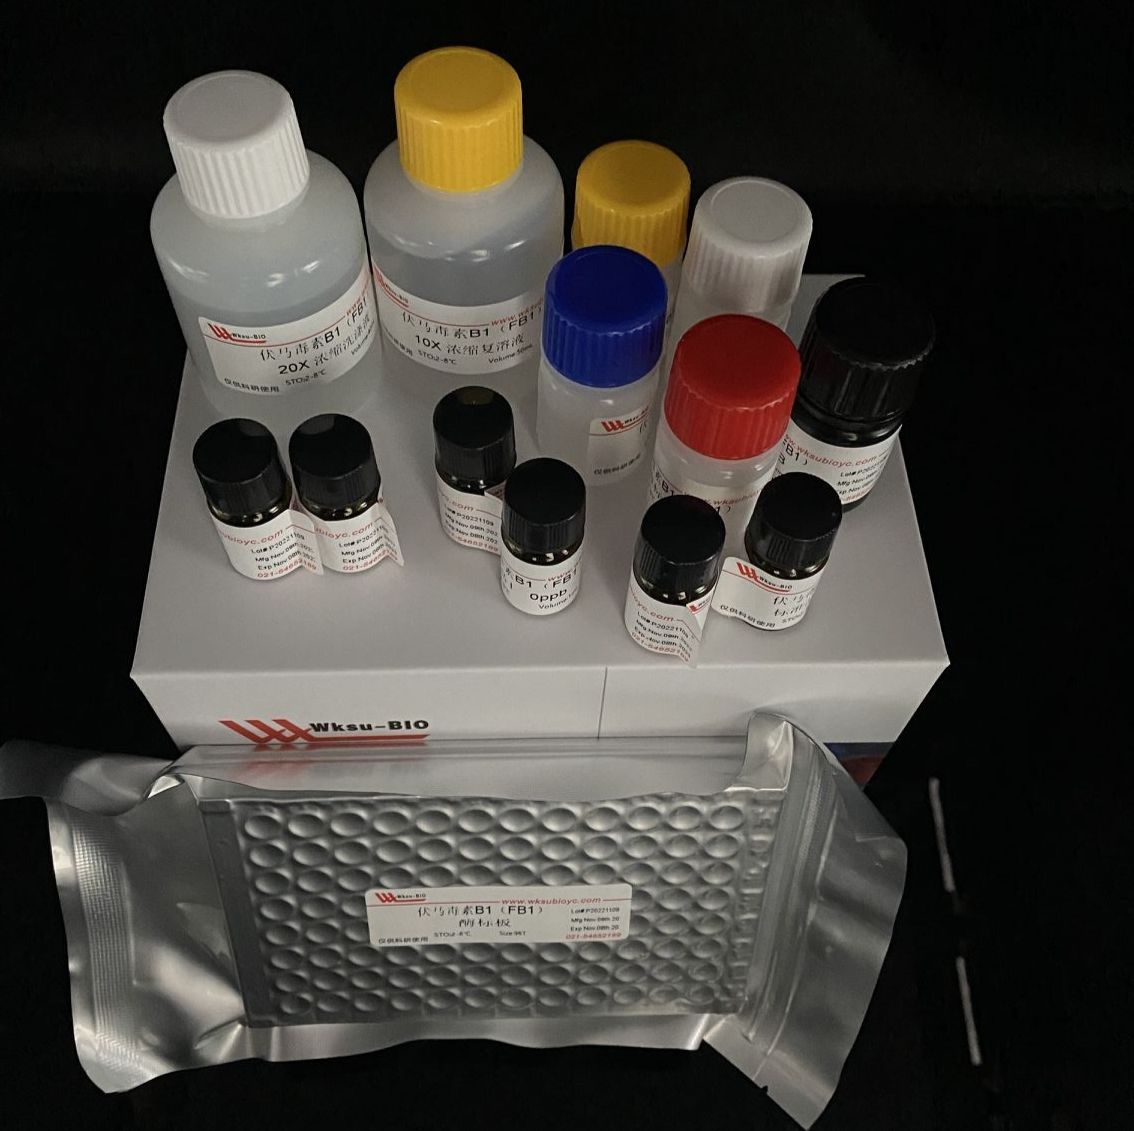 中性转化酶(NI)/细胞质转化酶试剂盒,微板法